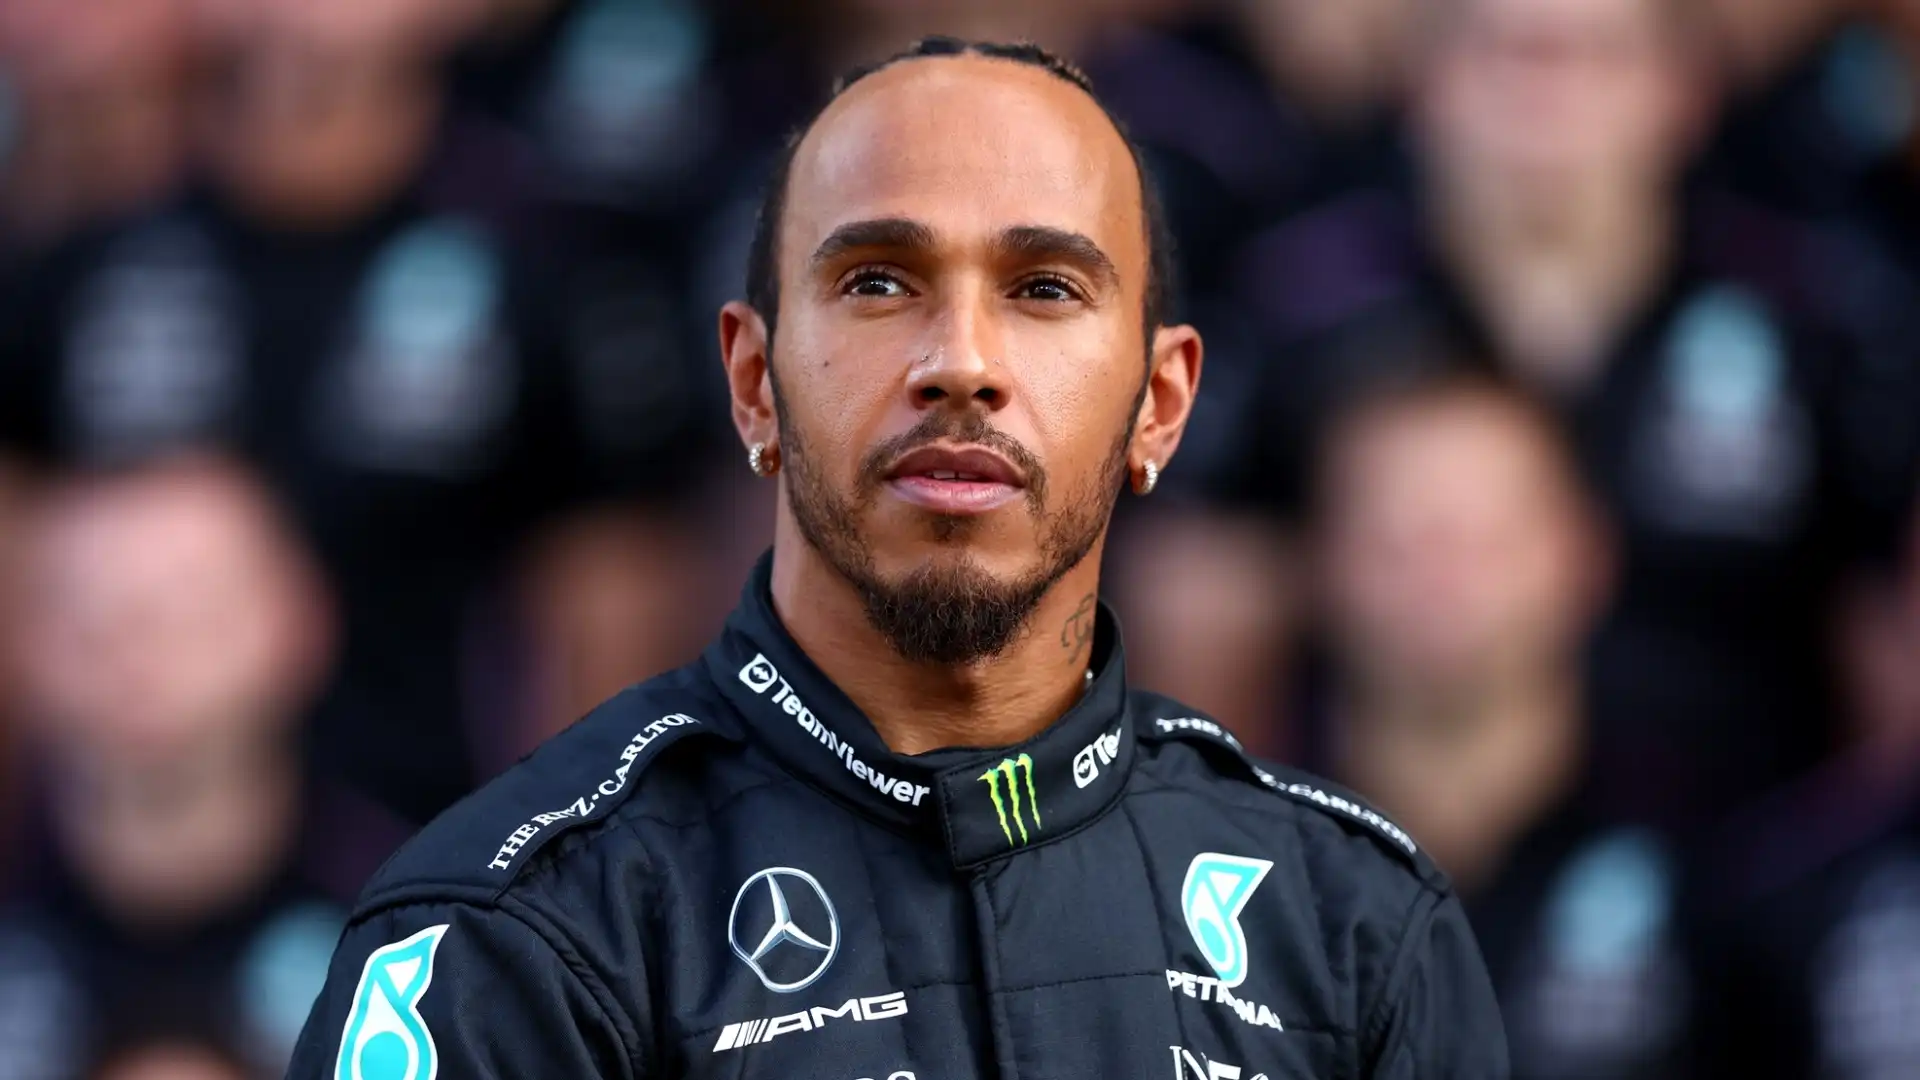 Si apre il dibattito sul possibile sostituto di Lewis Hamilton alla Mercedes nel 2025